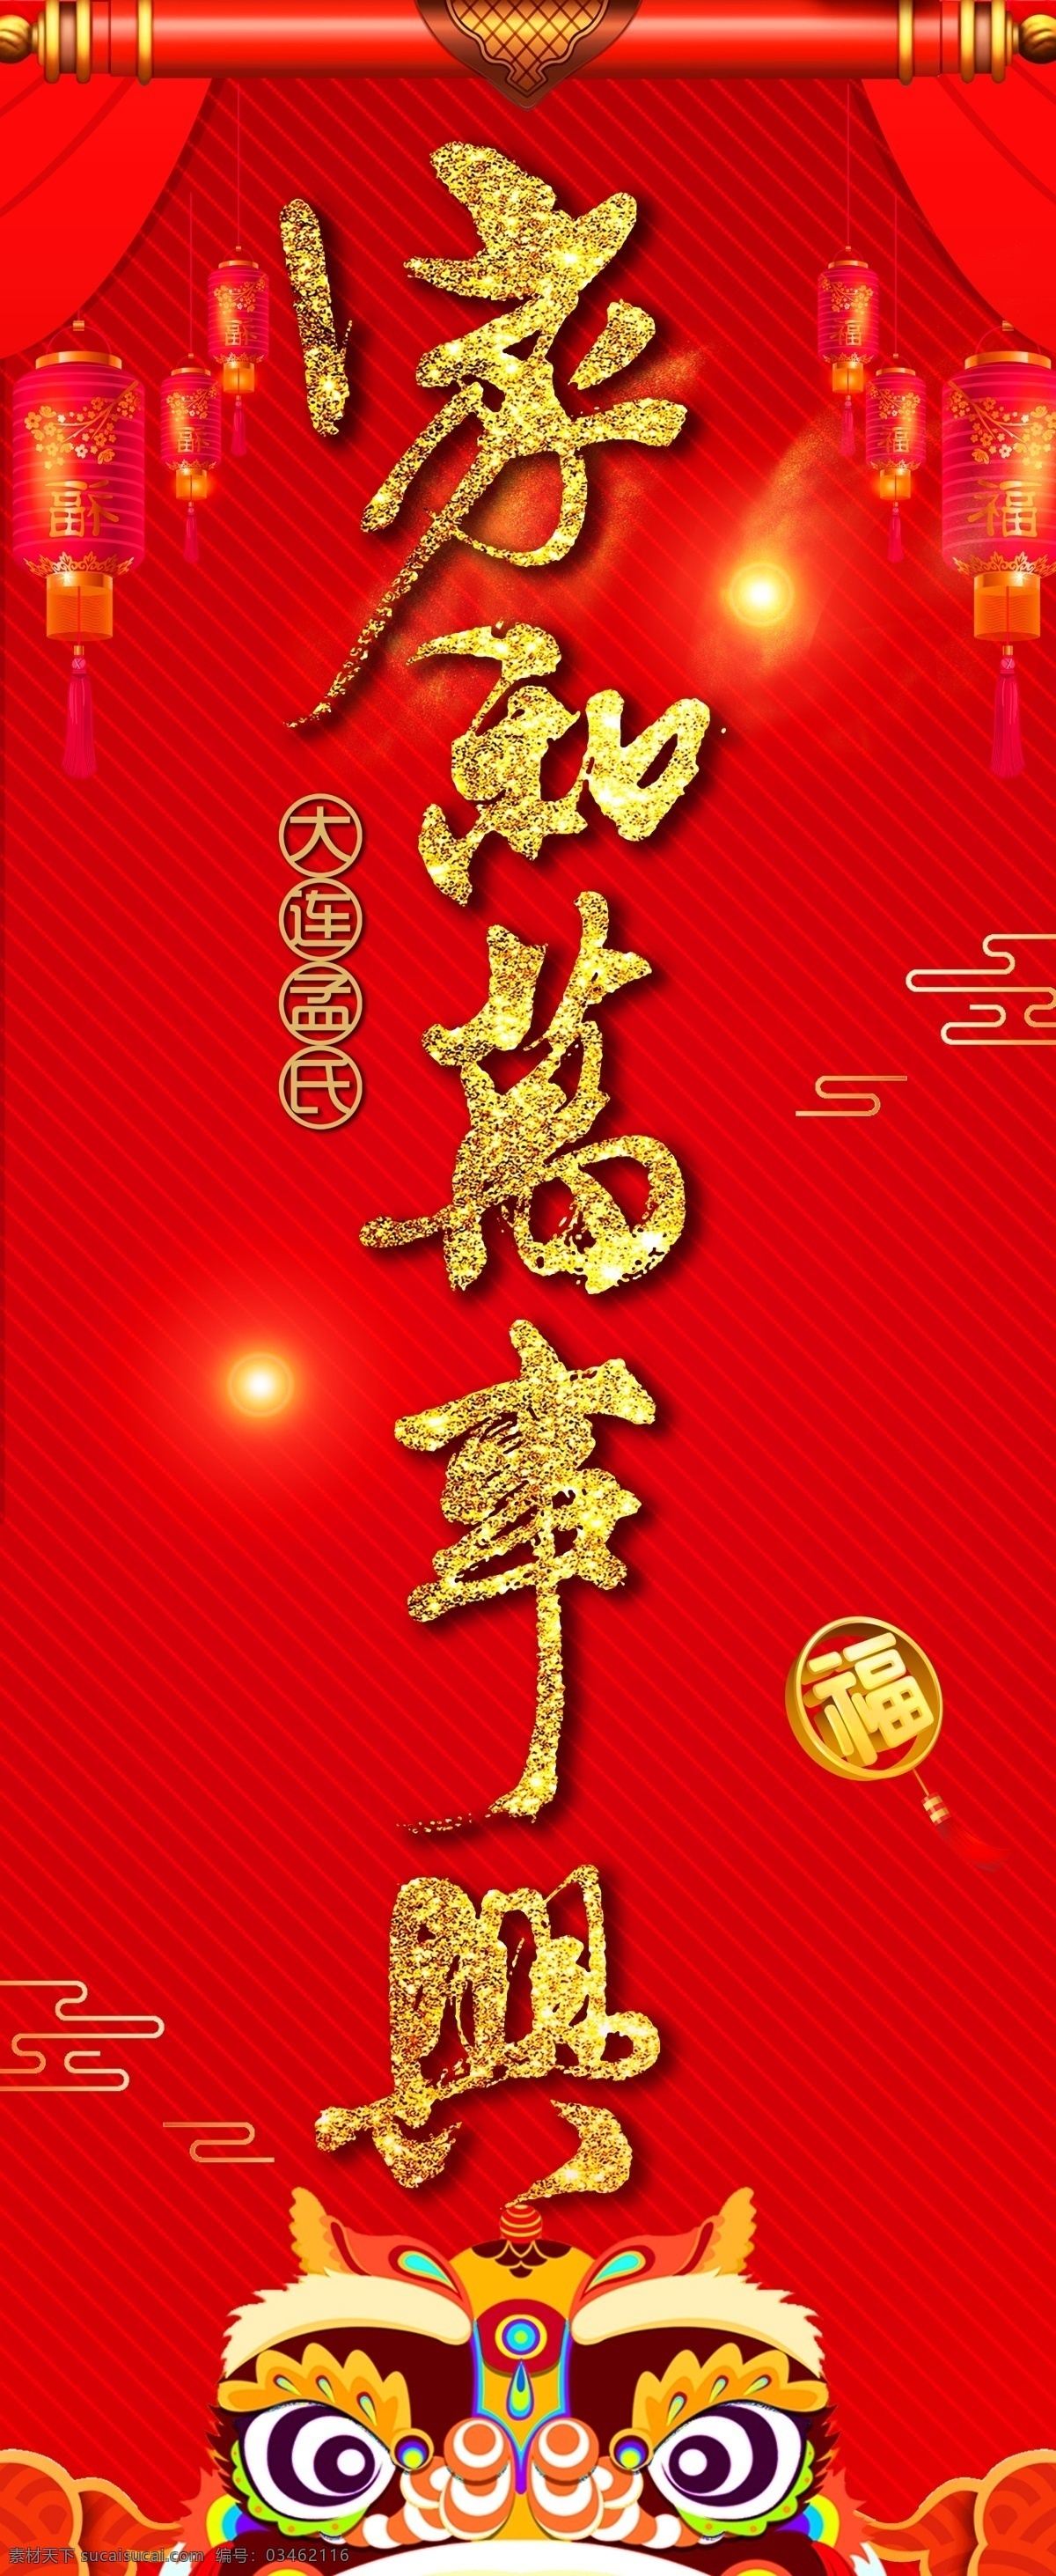 家和万事兴 红色 狮子头 字体 幕布 灯笼 文化艺术 传统文化